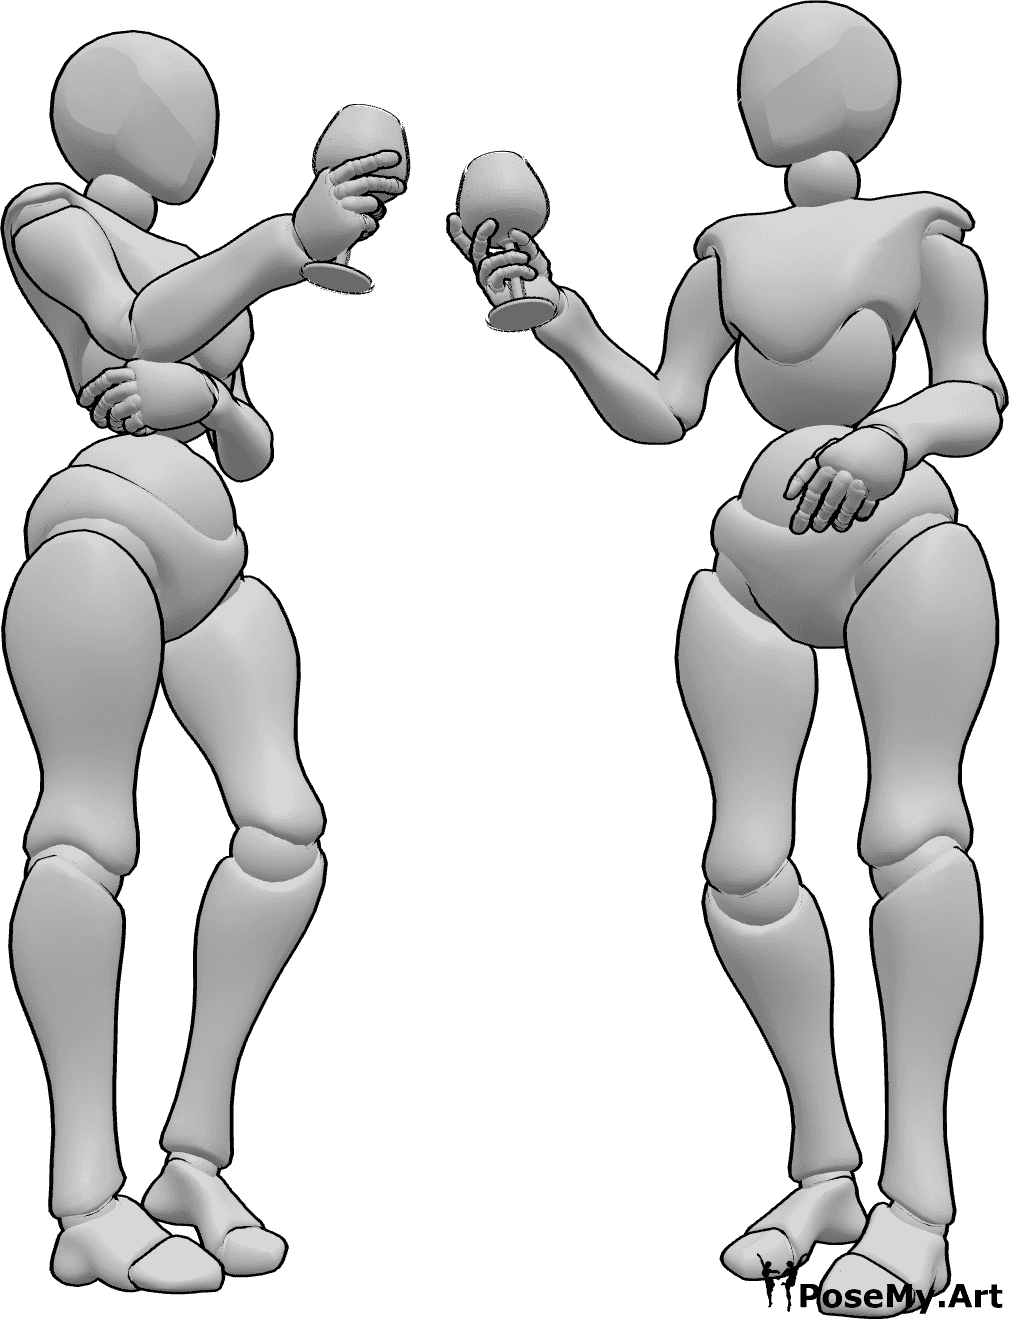 Référence des poses- Pose de femmes pour un toast - Deux femmes se tiennent debout et trinquent avant de boire, référence à la boisson